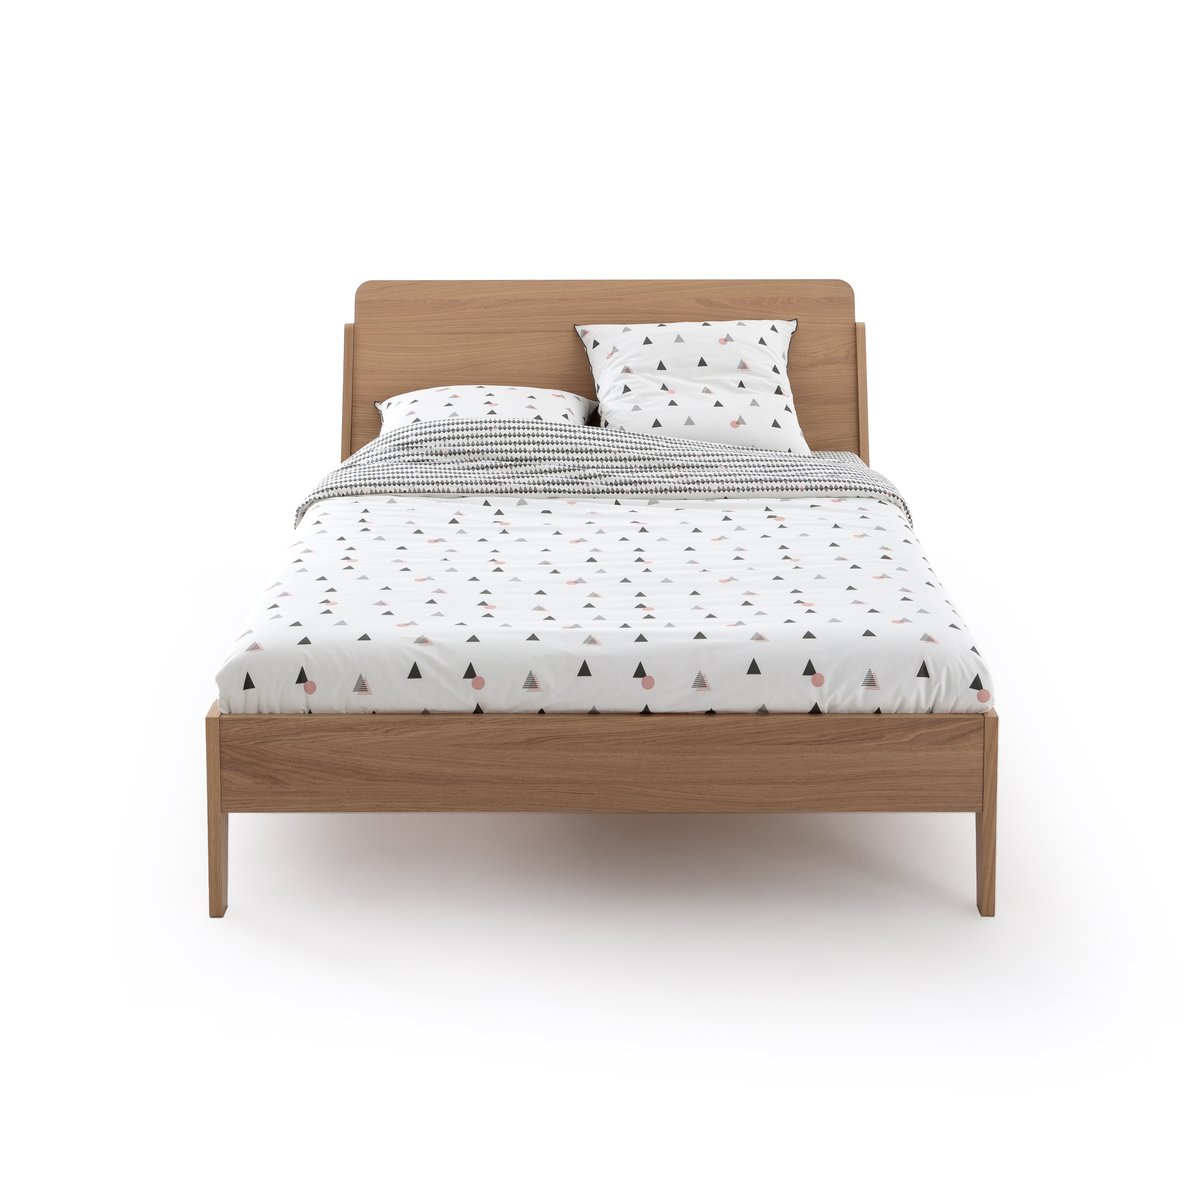 Кровать La Redoute DOUV 160 x 200 см каштановый, размер 160 x 200 см - фото 2